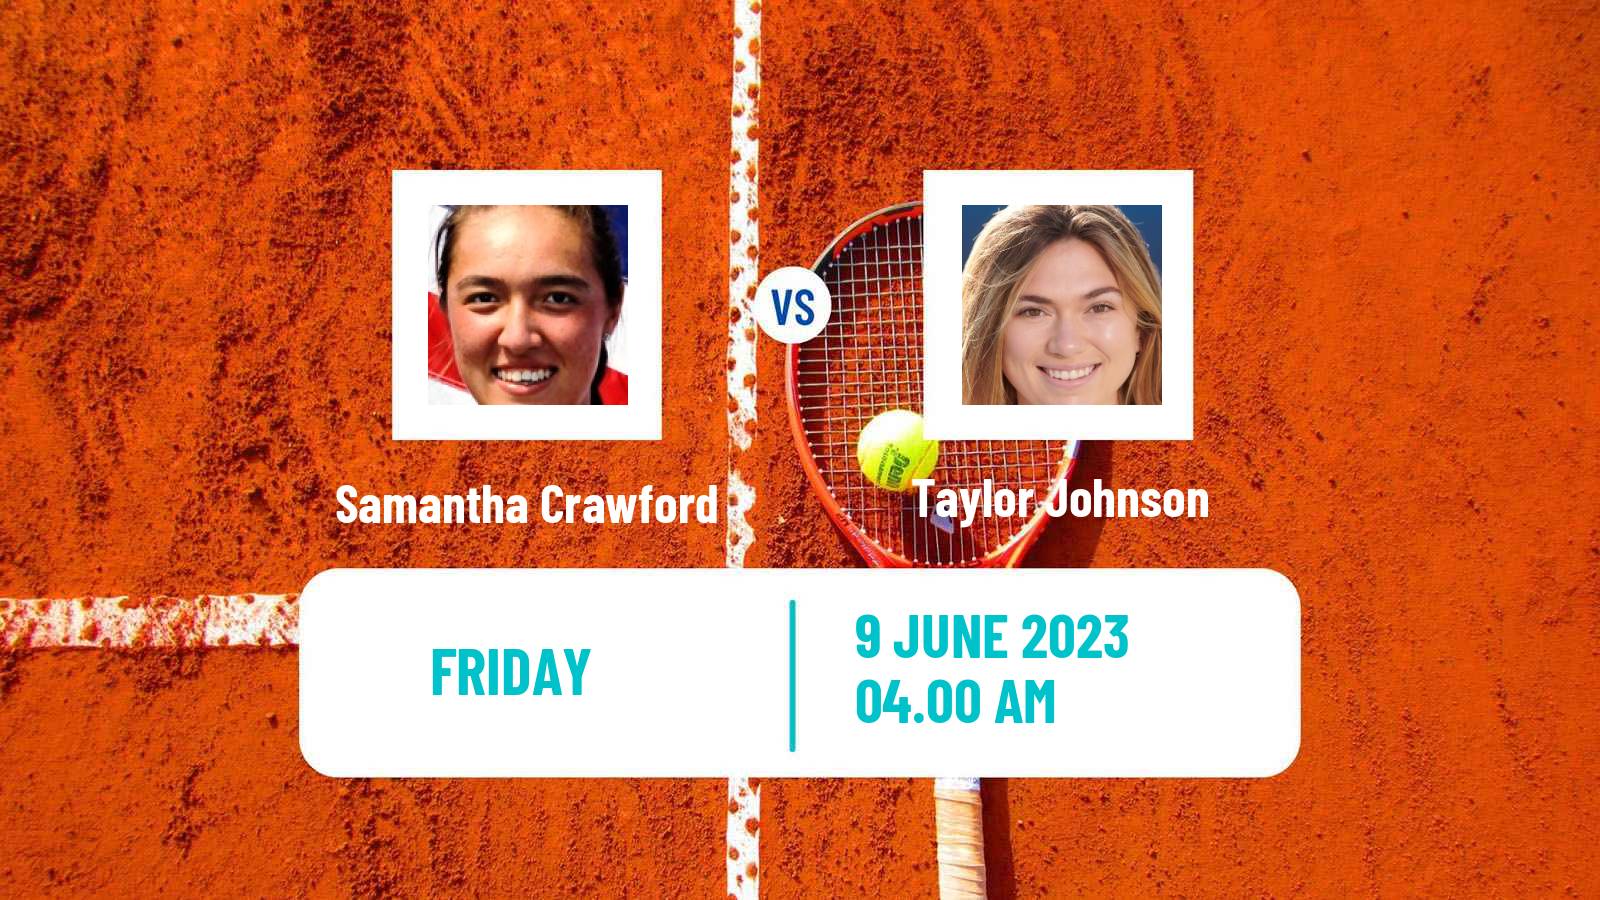 Tennis ITF W15 San Diego Ca Women Samantha Crawford - Taylor Johnson